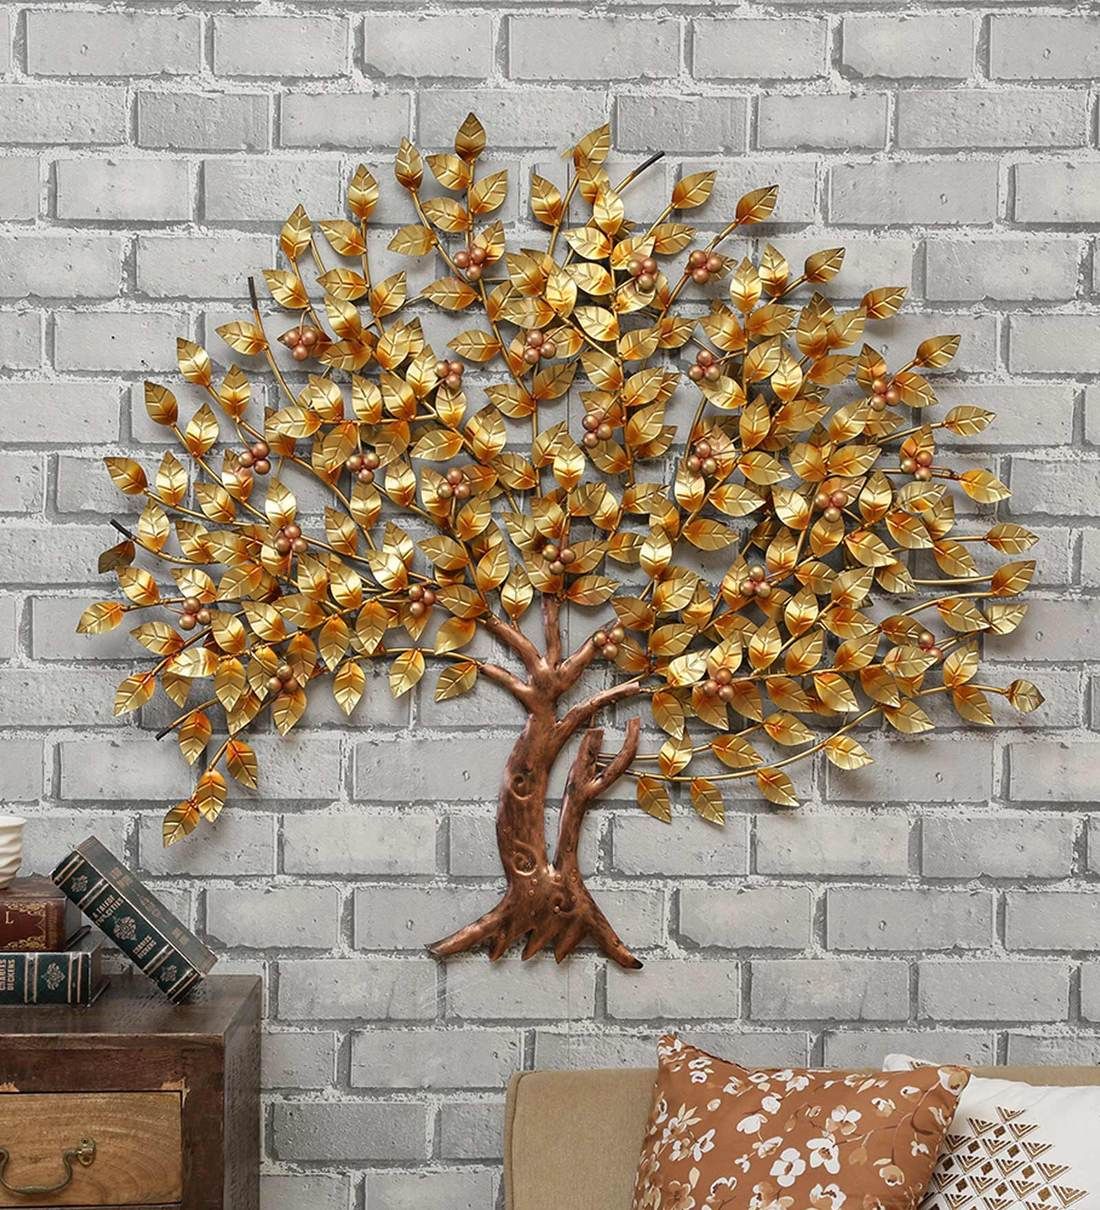 Buy Metal Antique Tree In Golden Wall Artmalik Design Online In Most Popular Antique Silver Metal Wall Art Sculptures (View 9 of 20)